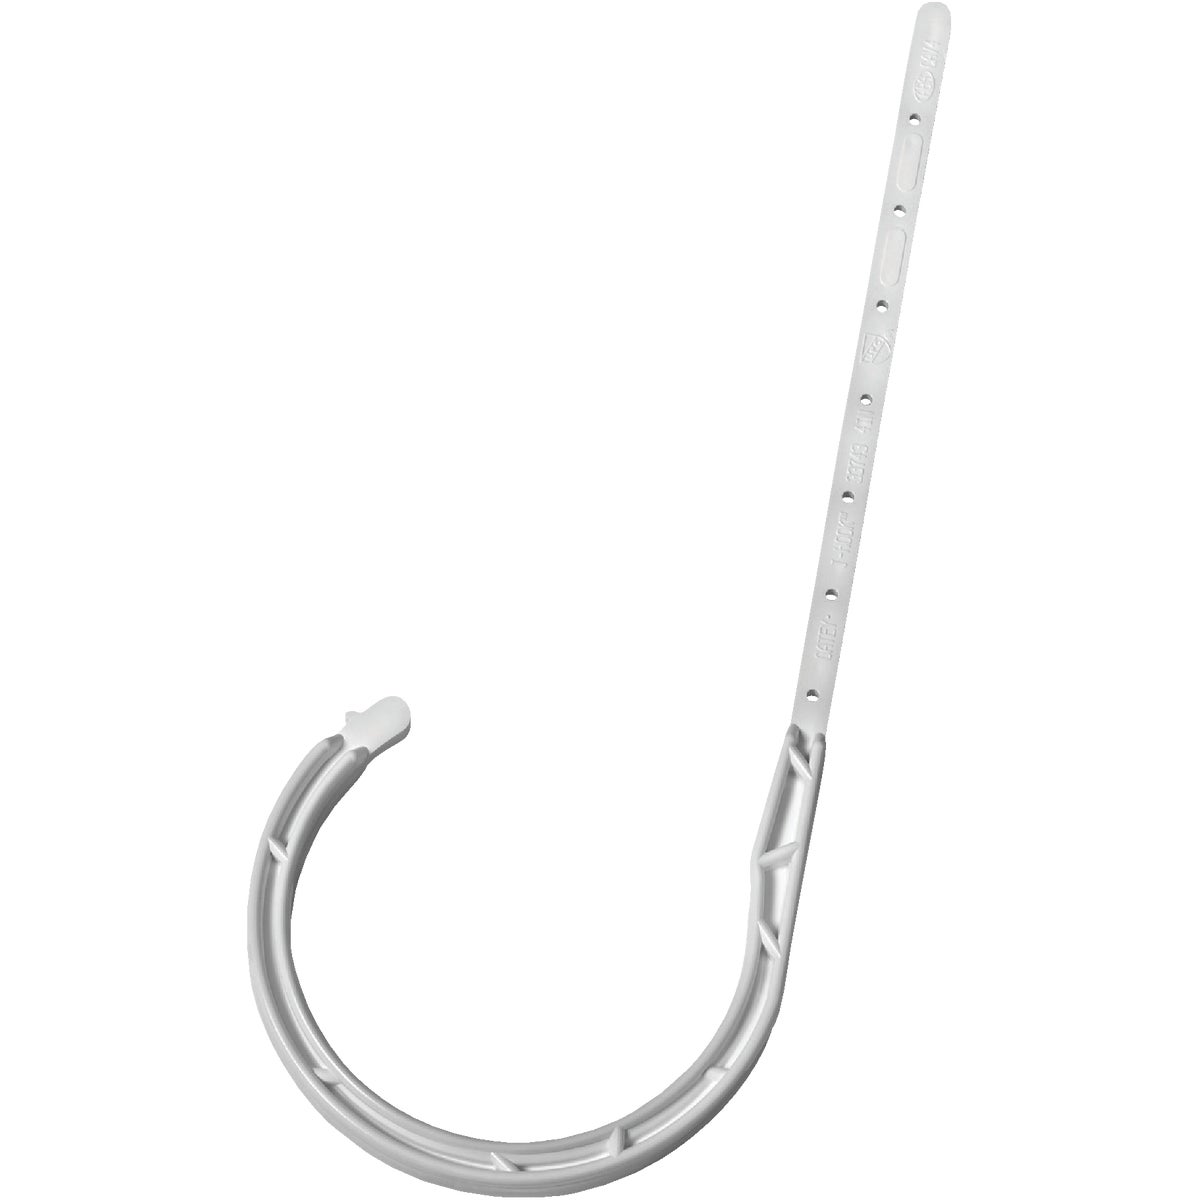 Oatey 4 In. x 7-1/2 In. ABS J-Hook Pipe Hook (4-Pack)